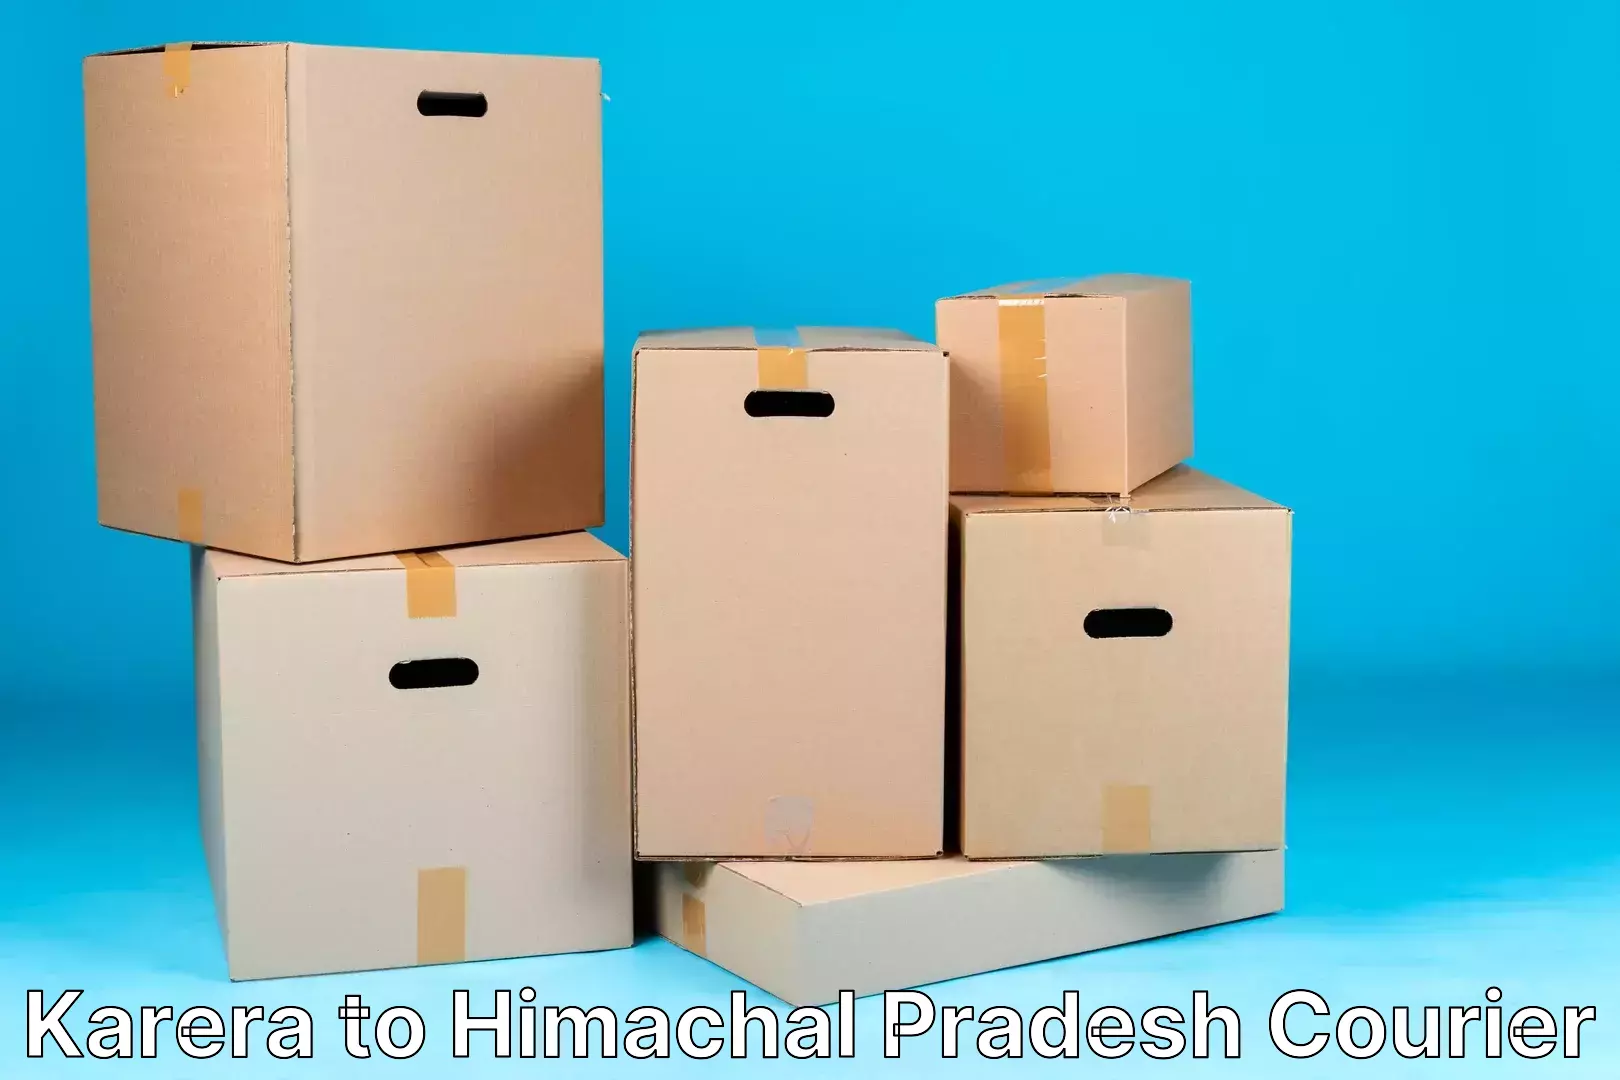 Logistics service provider Karera to Himachal Pradesh